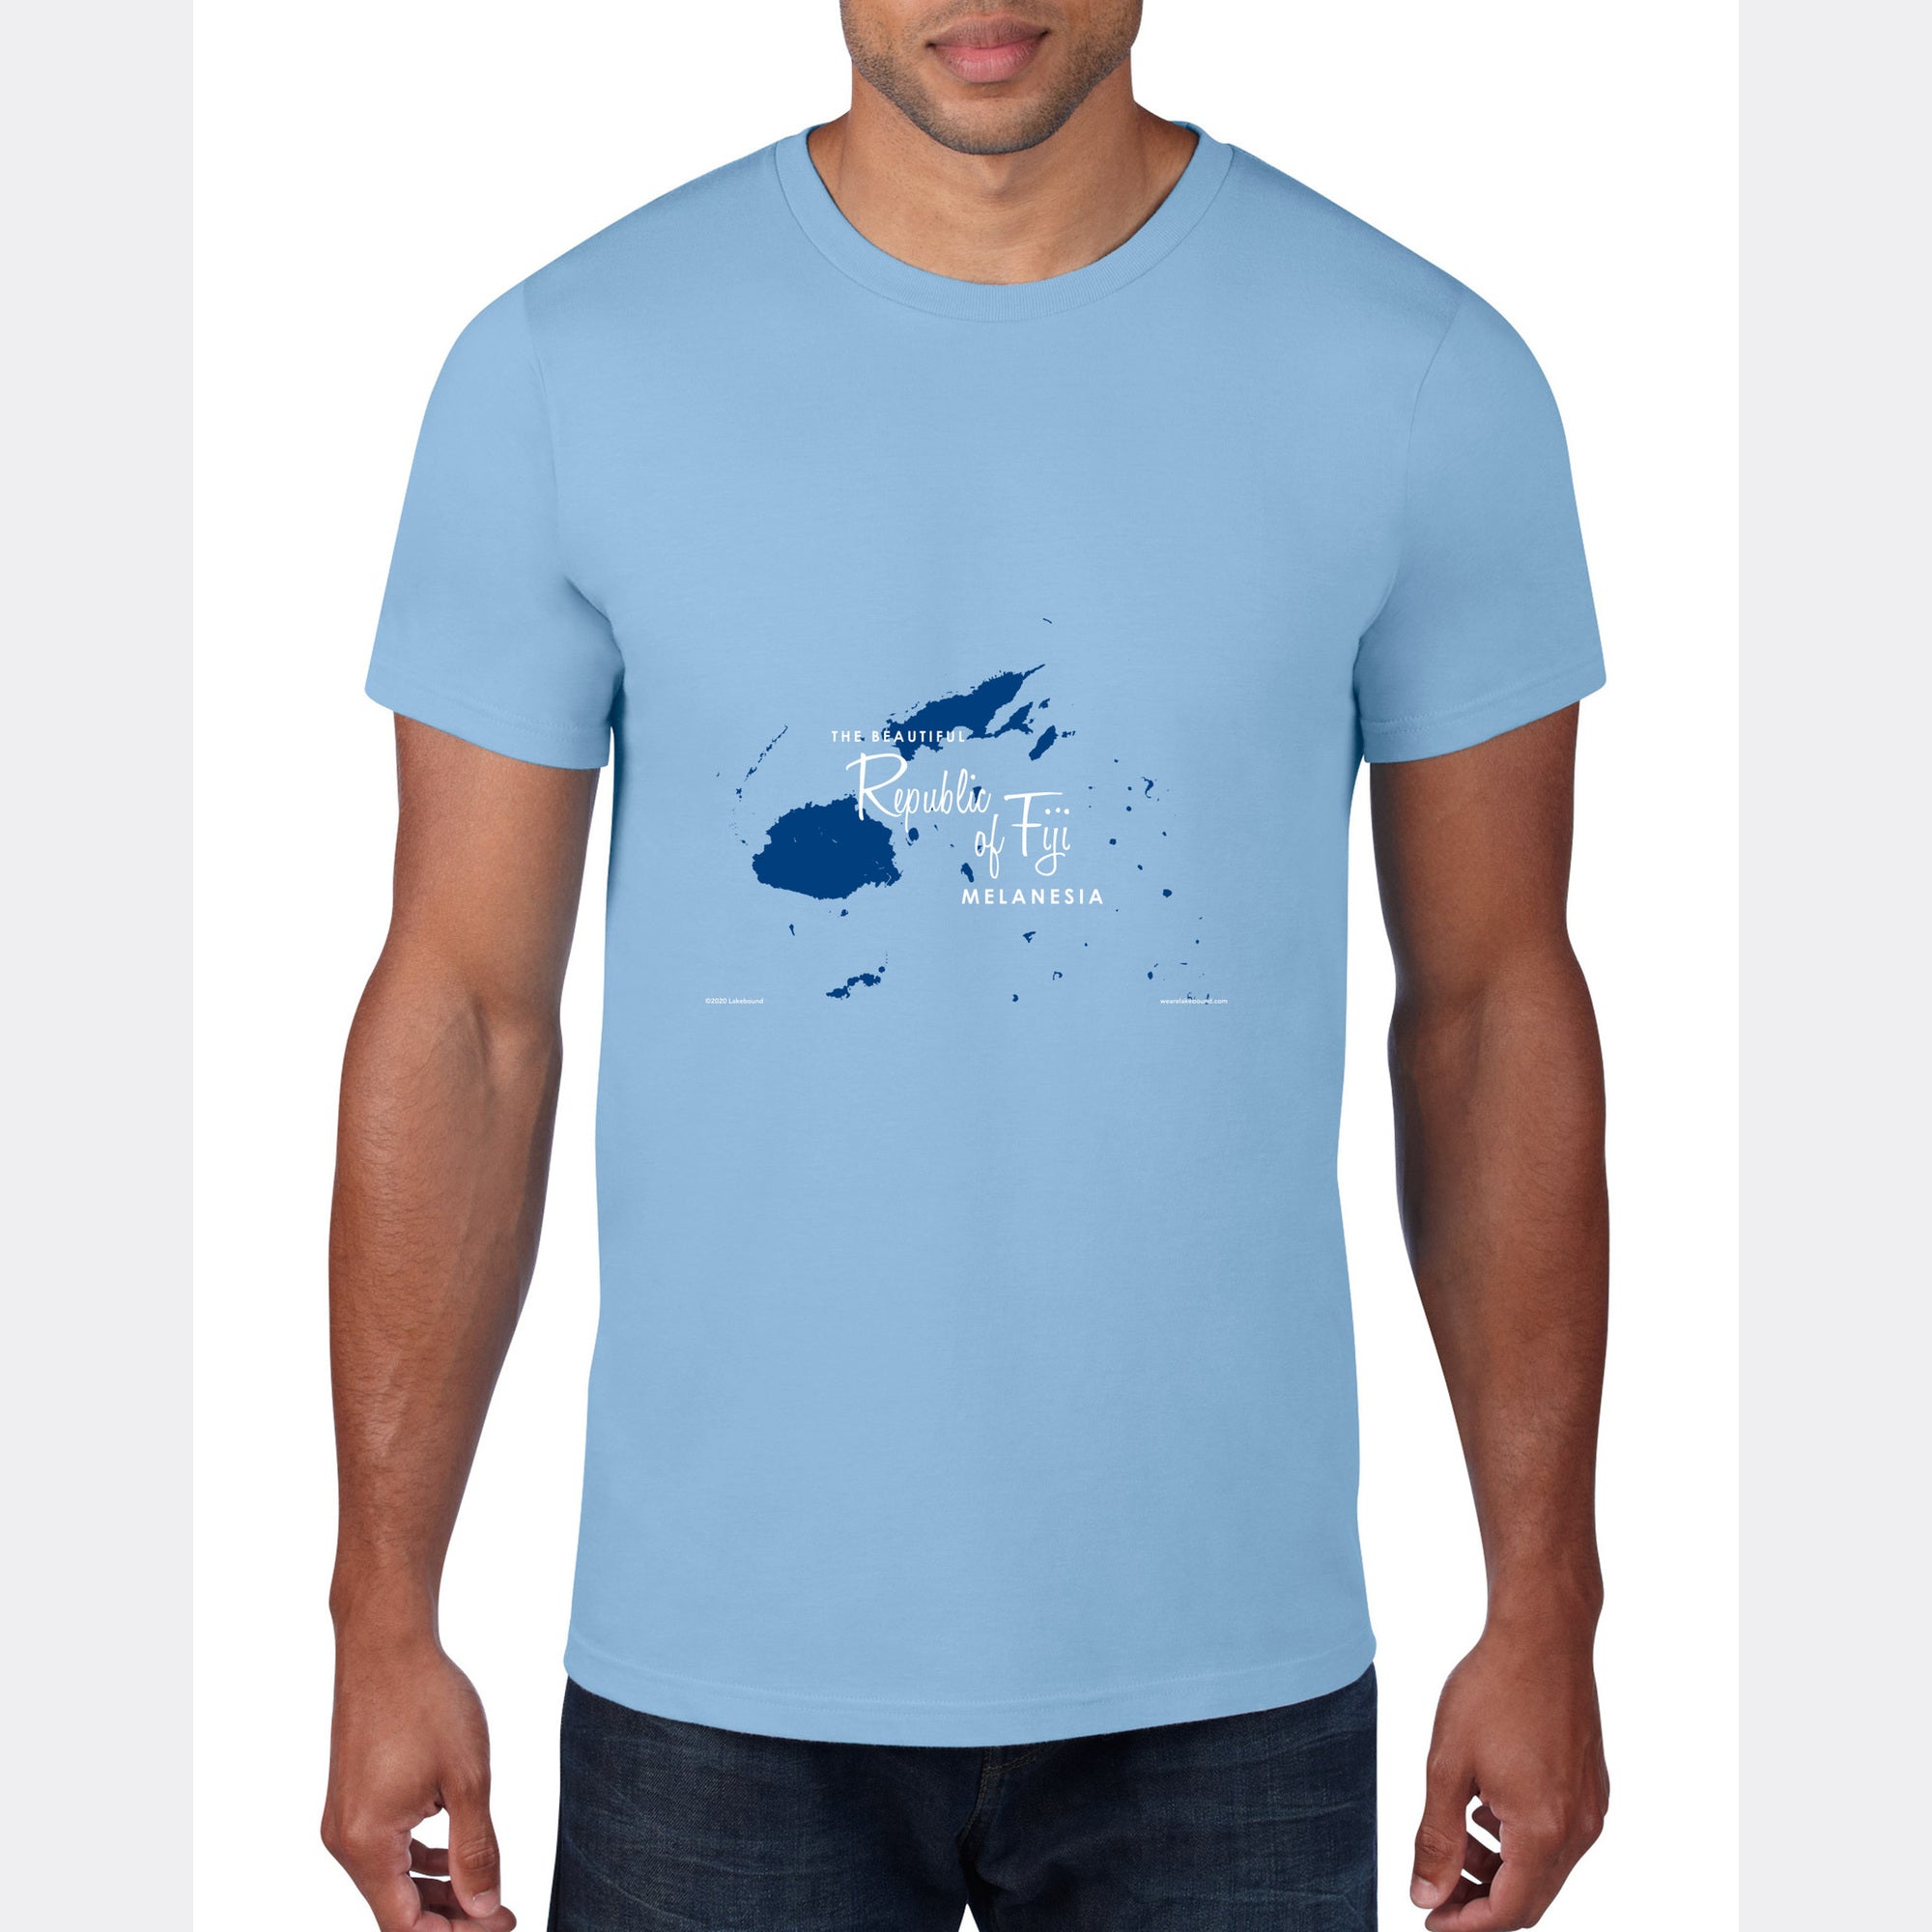 Republic of Fiji Melanesia, T-Shirt